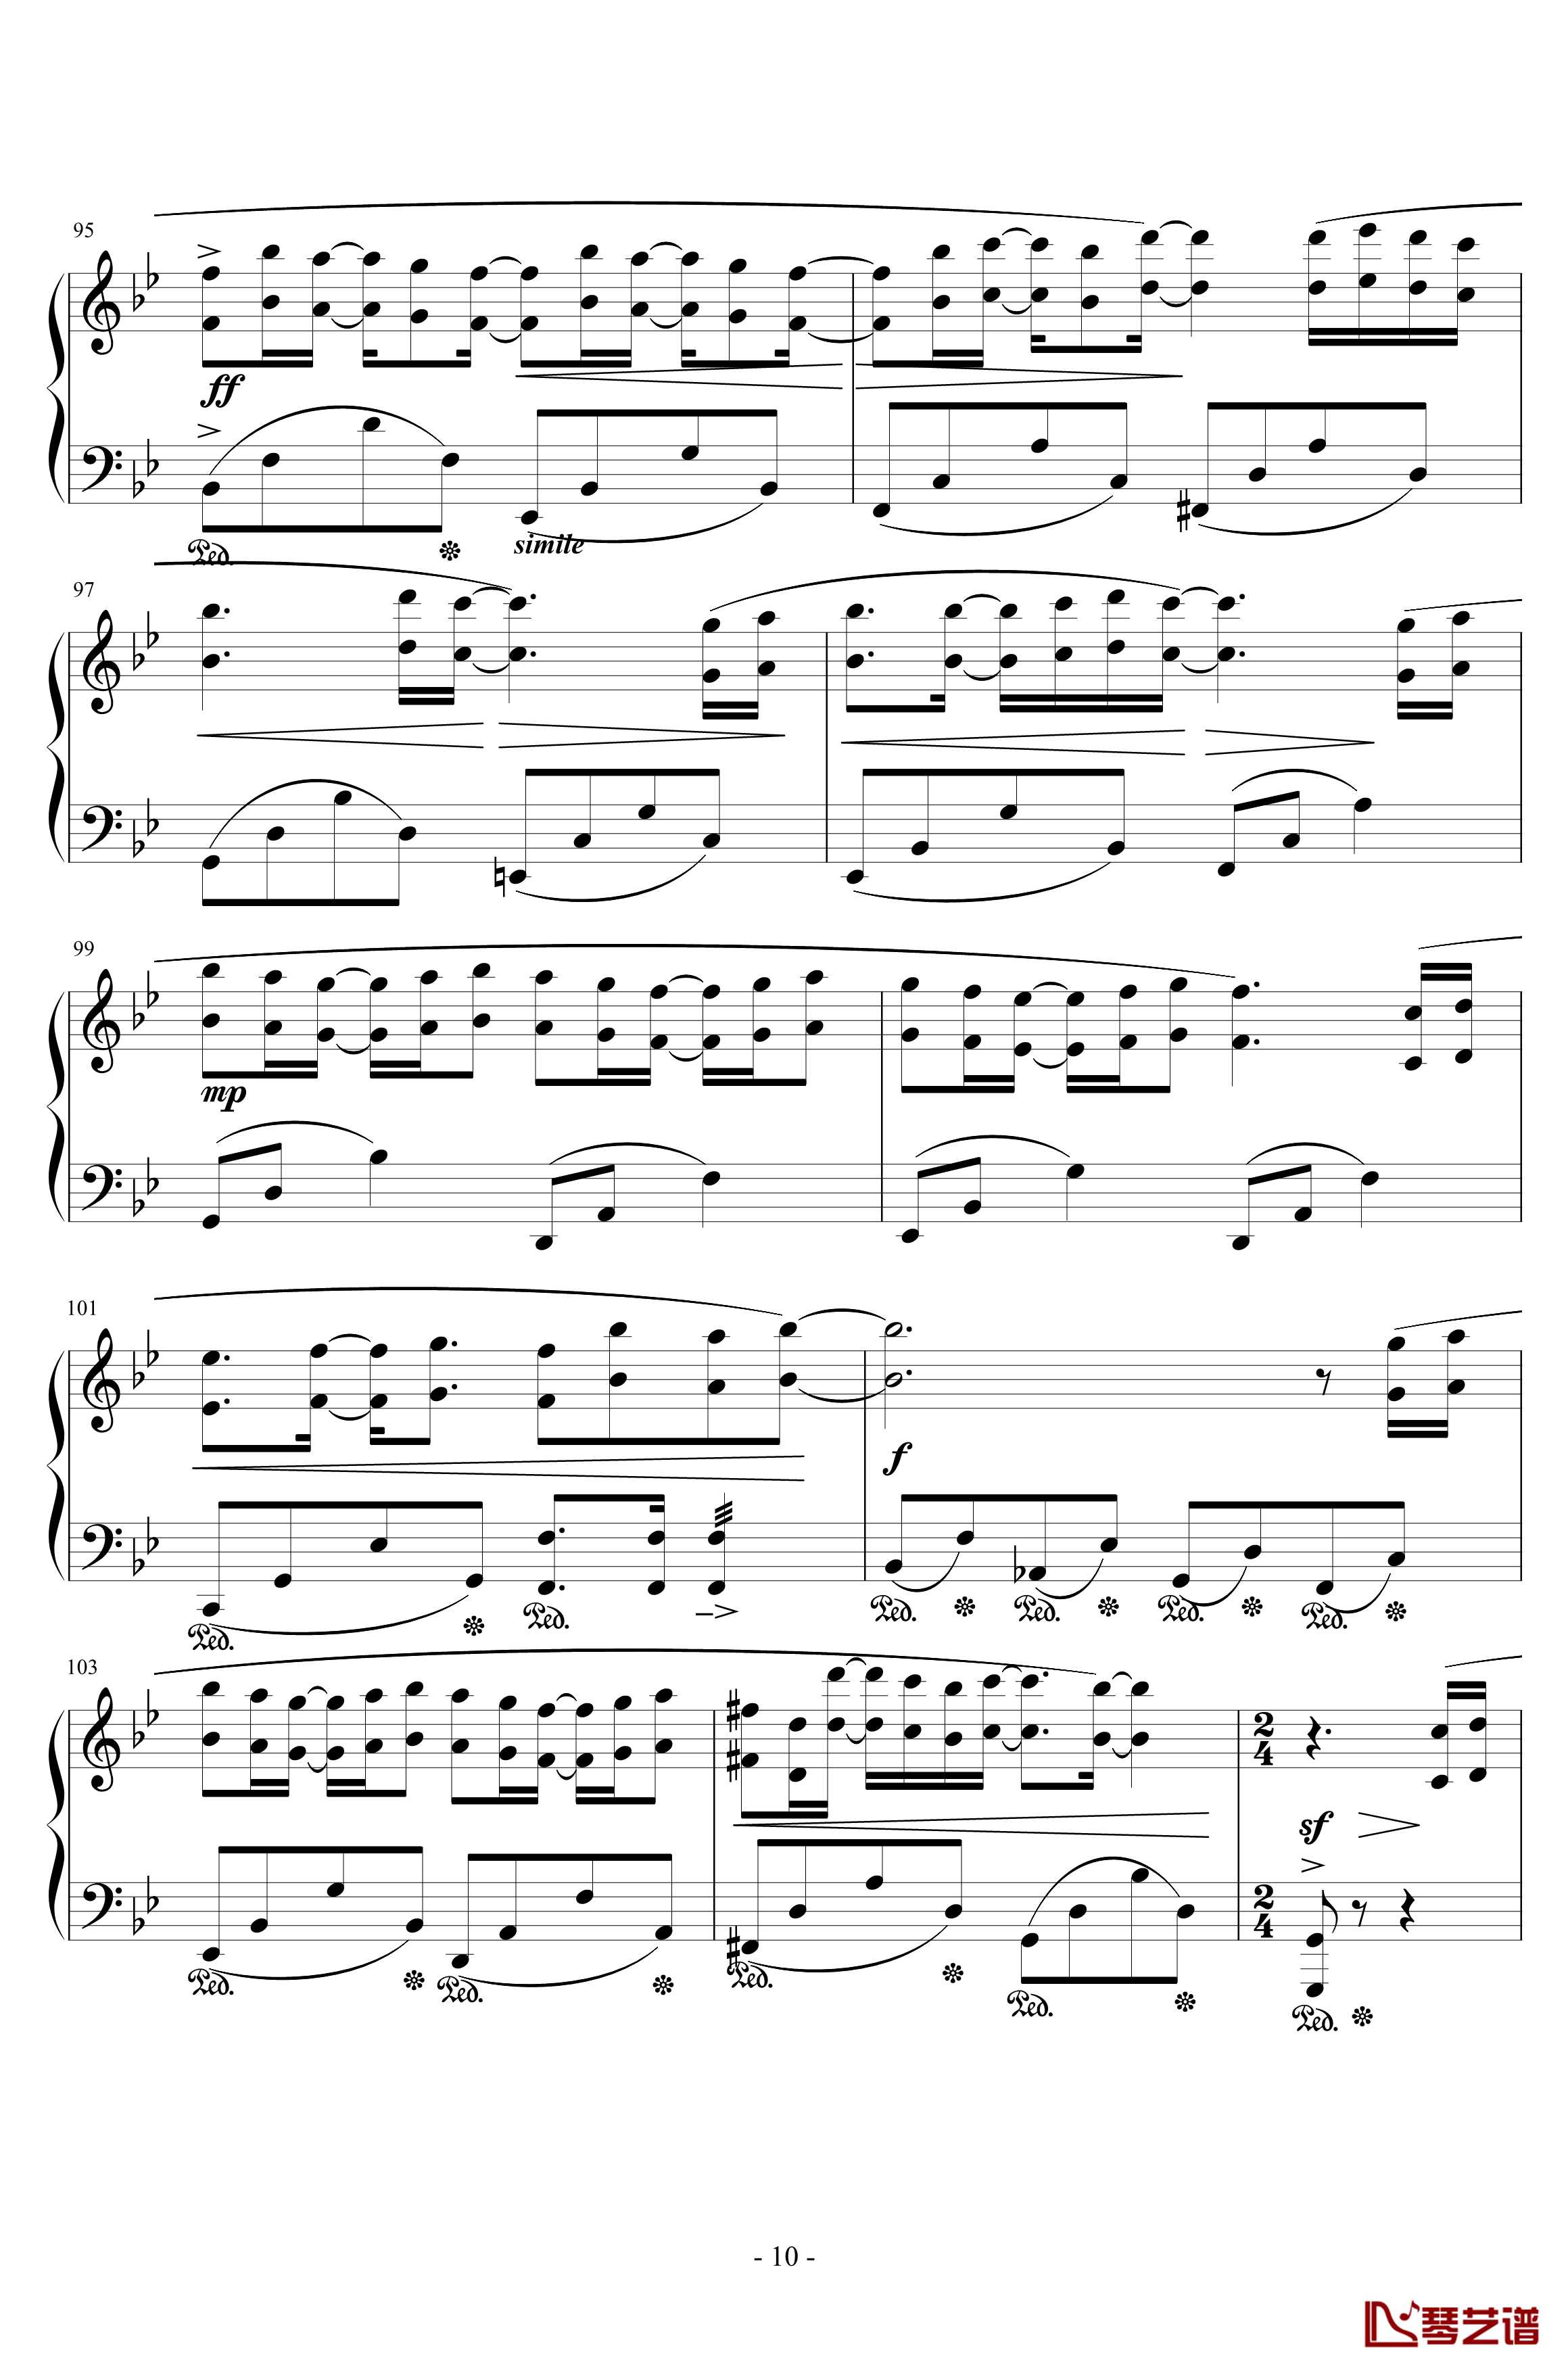 樱之雨钢琴谱-交响乐版-初音未来10